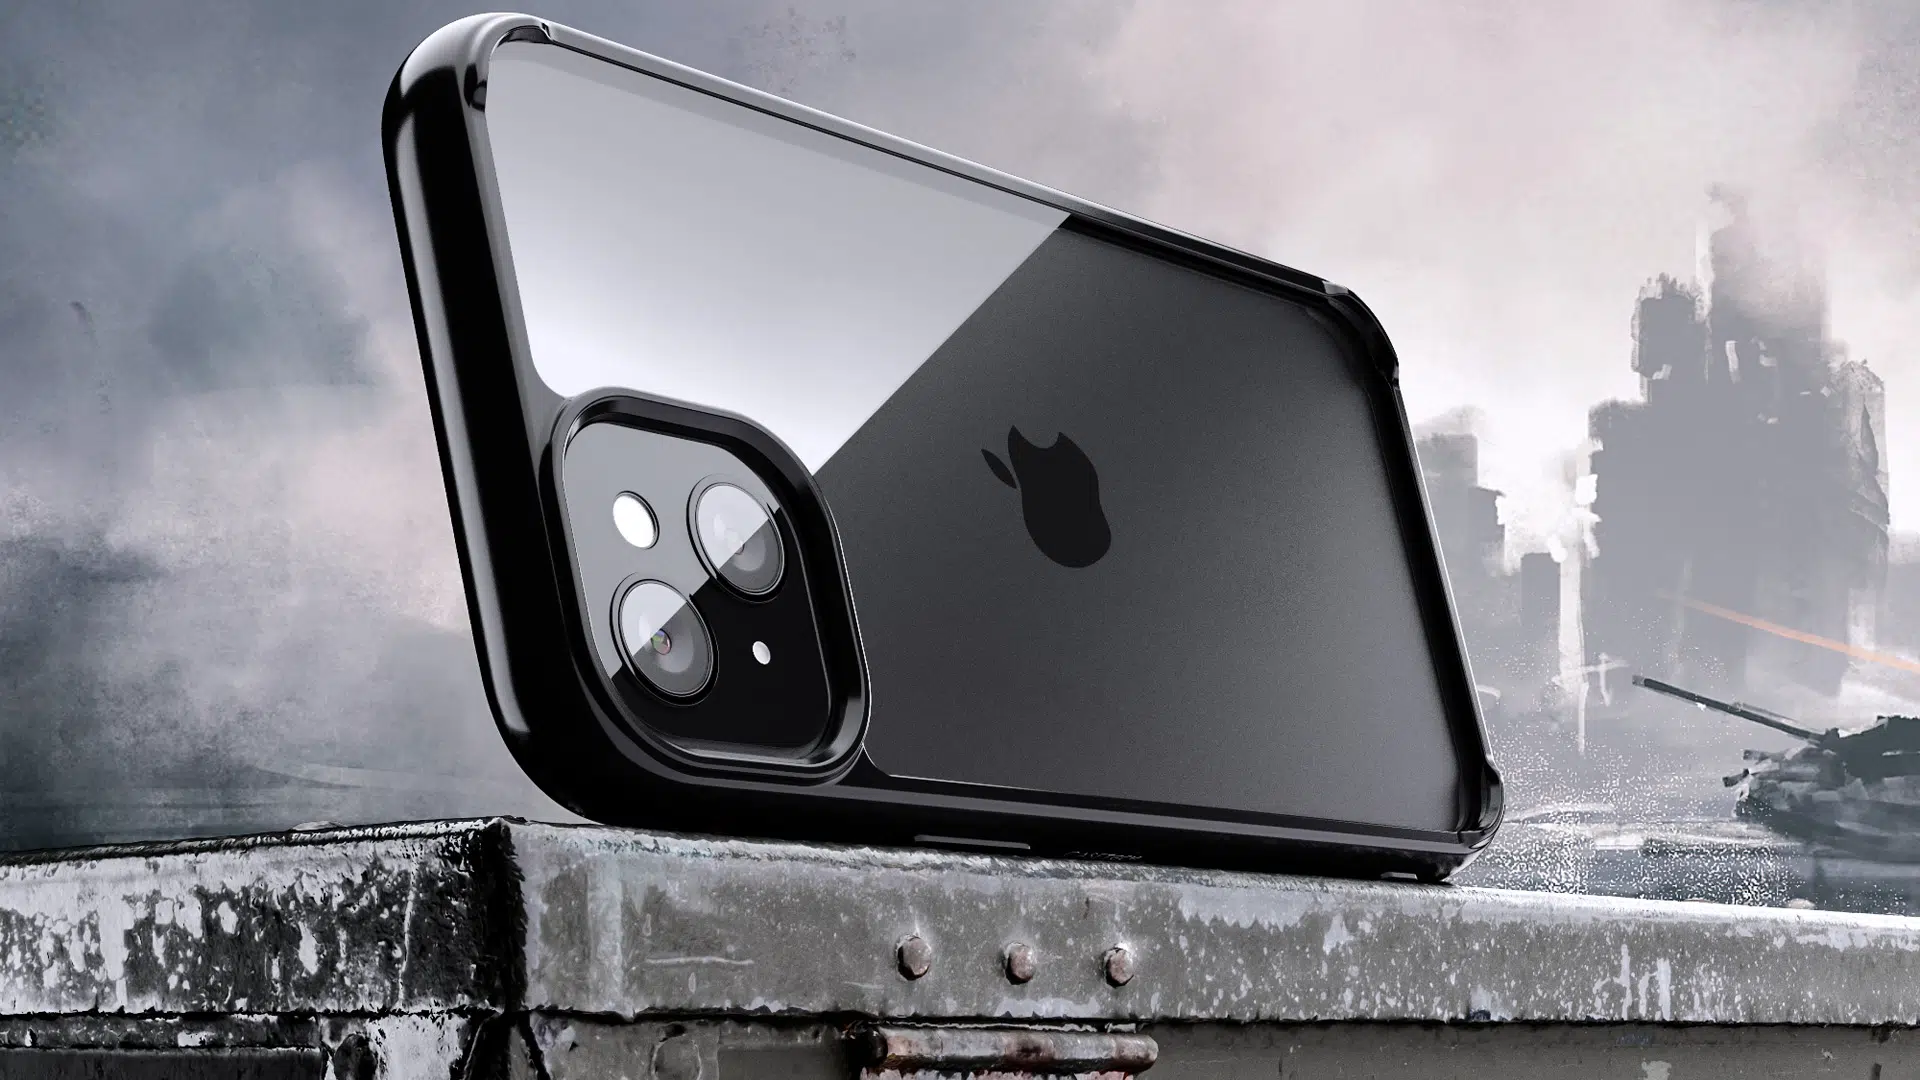 iPhone case 3D rendering